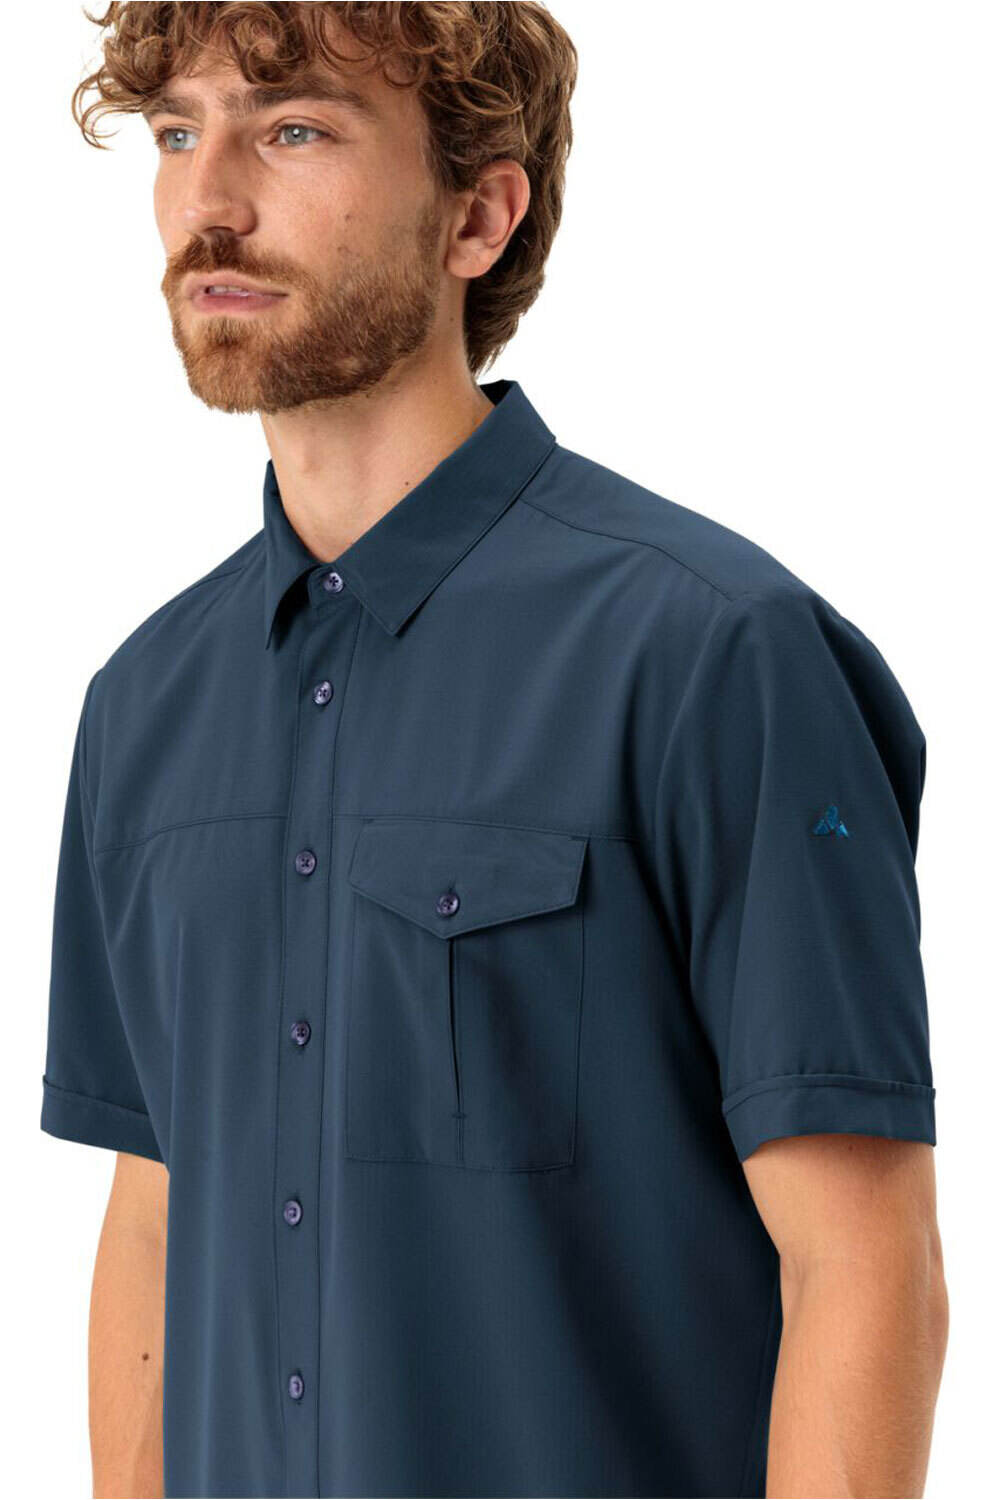 Vaude camisa montaña manga corta hombre Men's Rosemoor Shirt II vista detalle